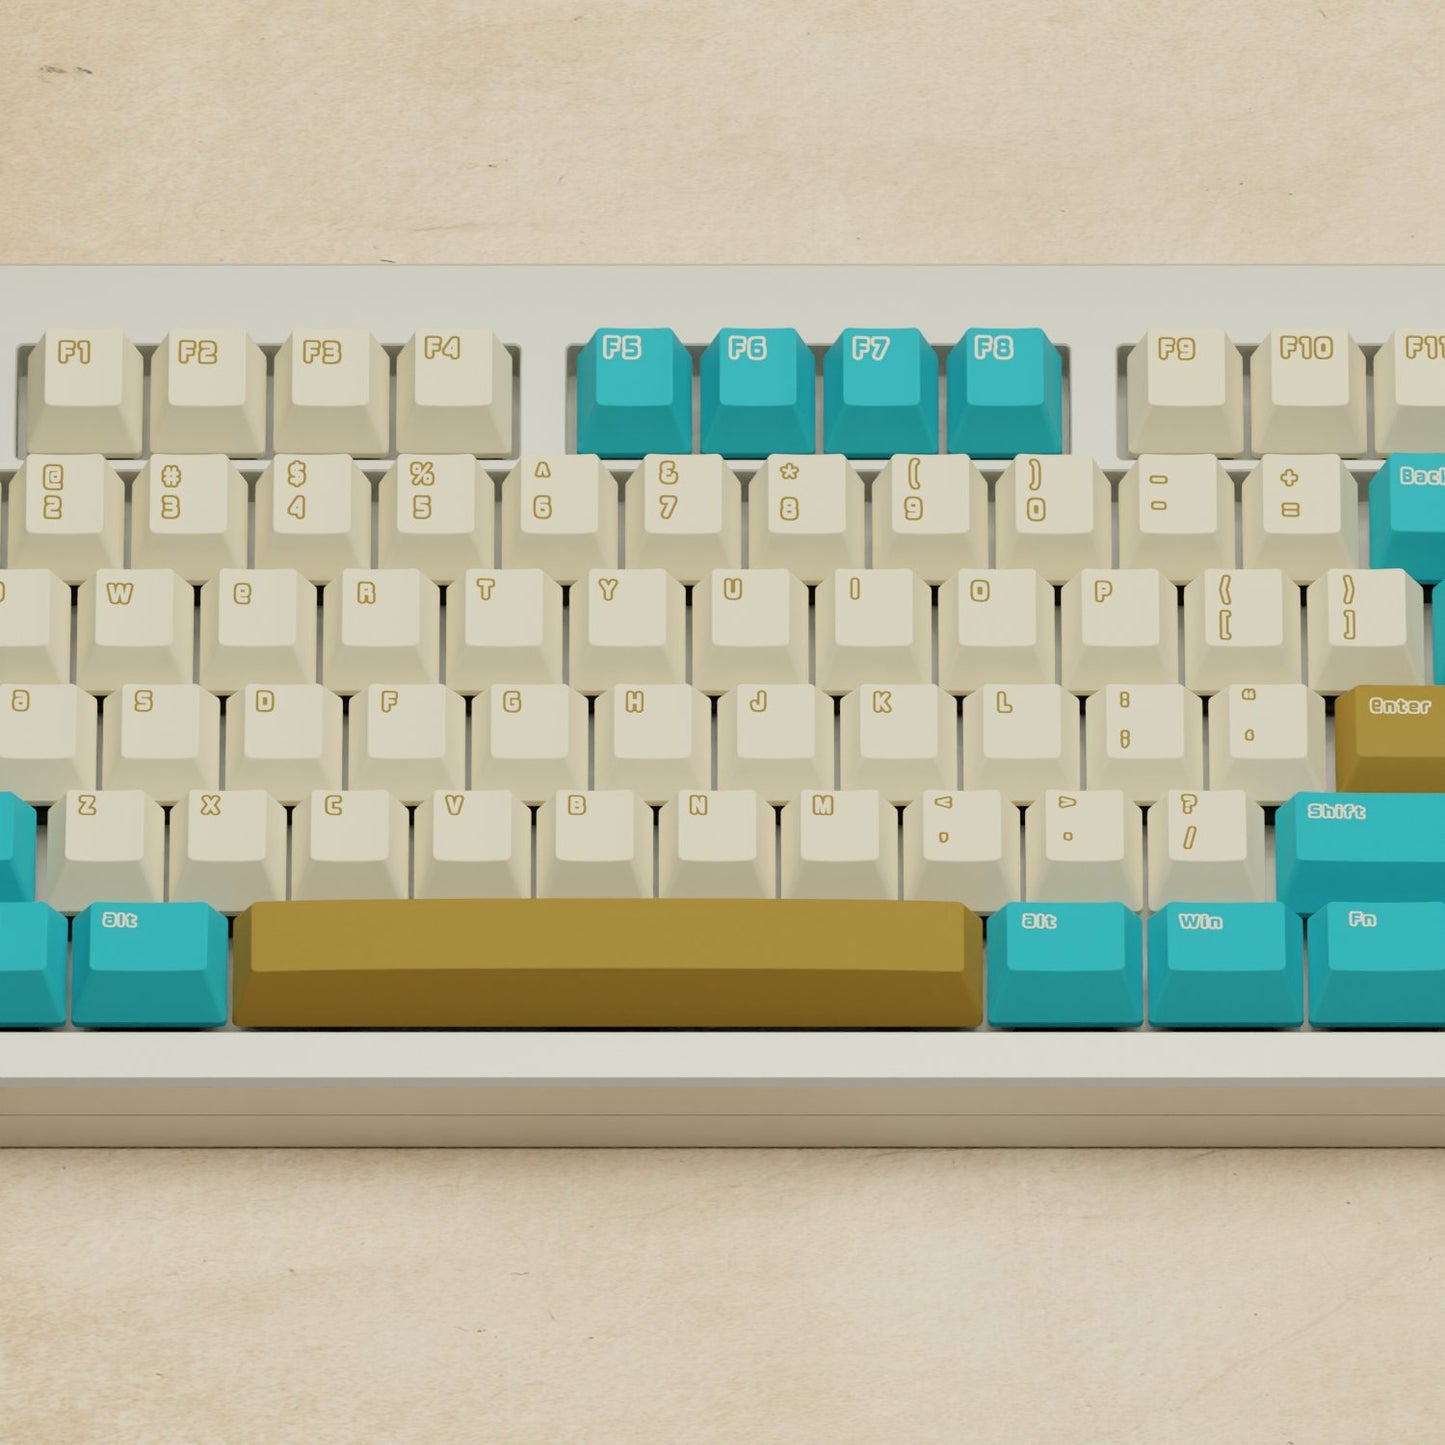 Monsgeek M5 - 100% Creamy Blue Mechanical Keyboard - Goblintechkeys